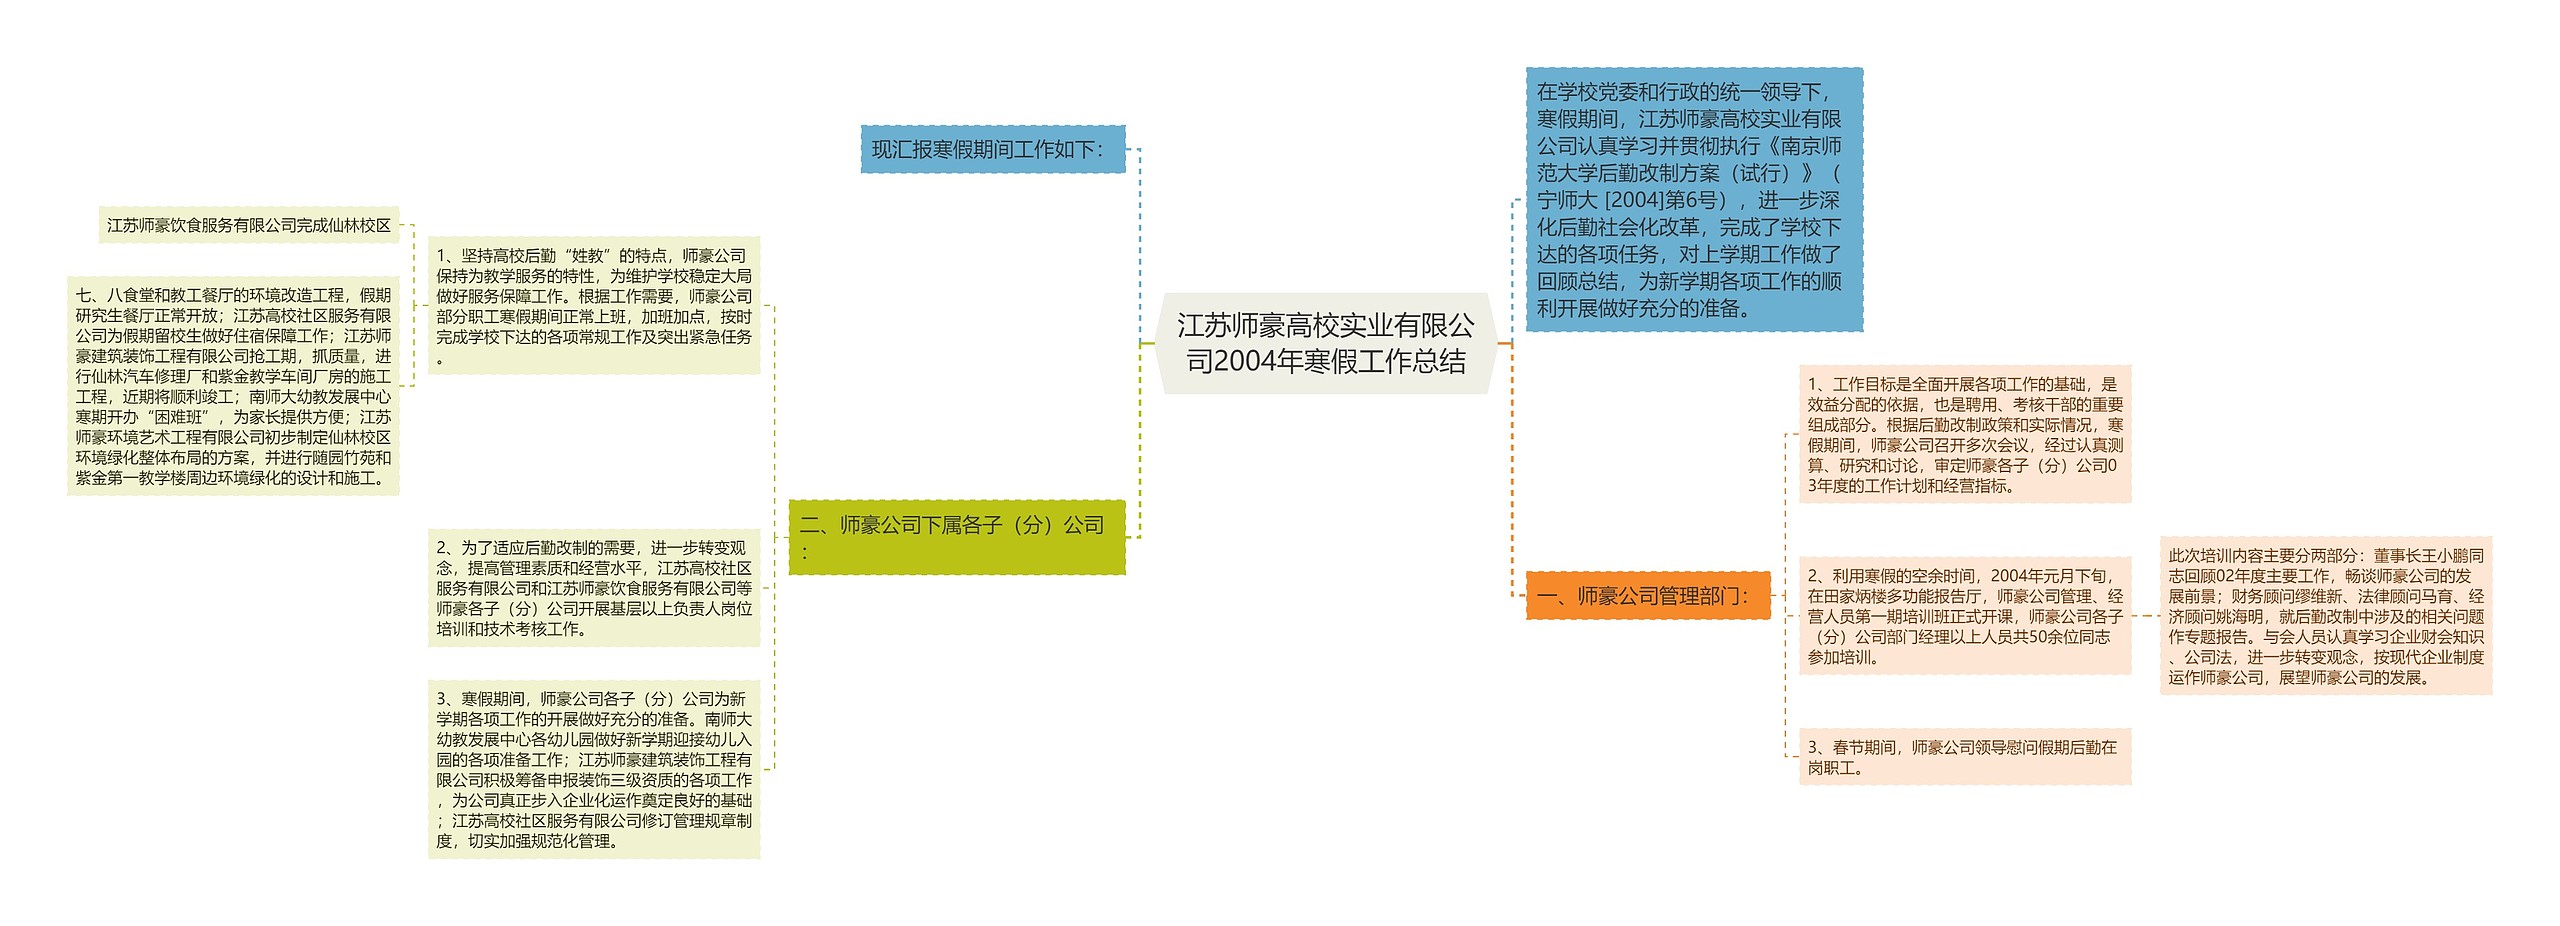 江苏师豪高校实业有限公司2004年寒假工作总结思维导图